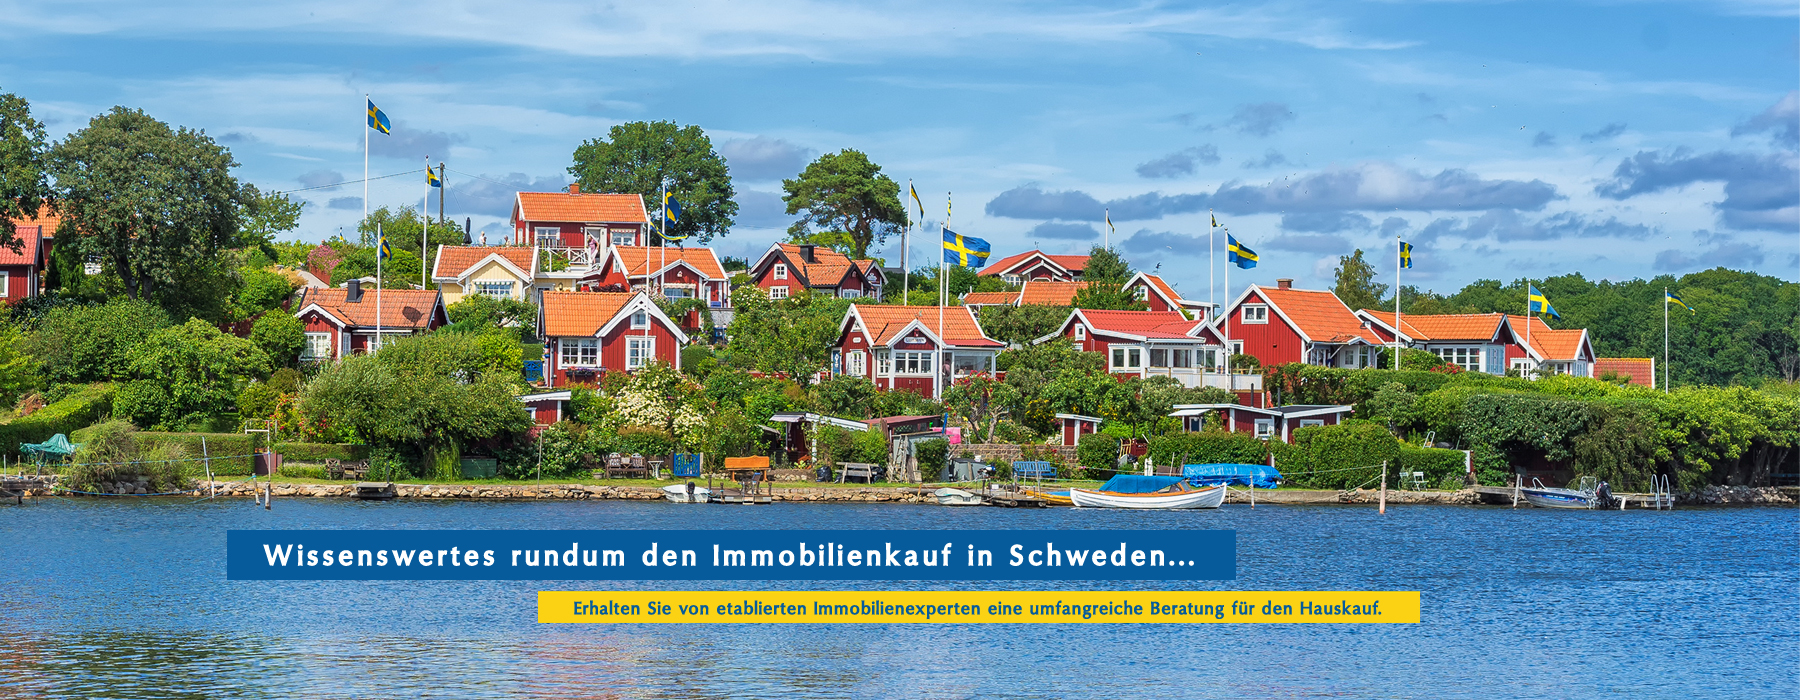 Häuser am See in Schweden